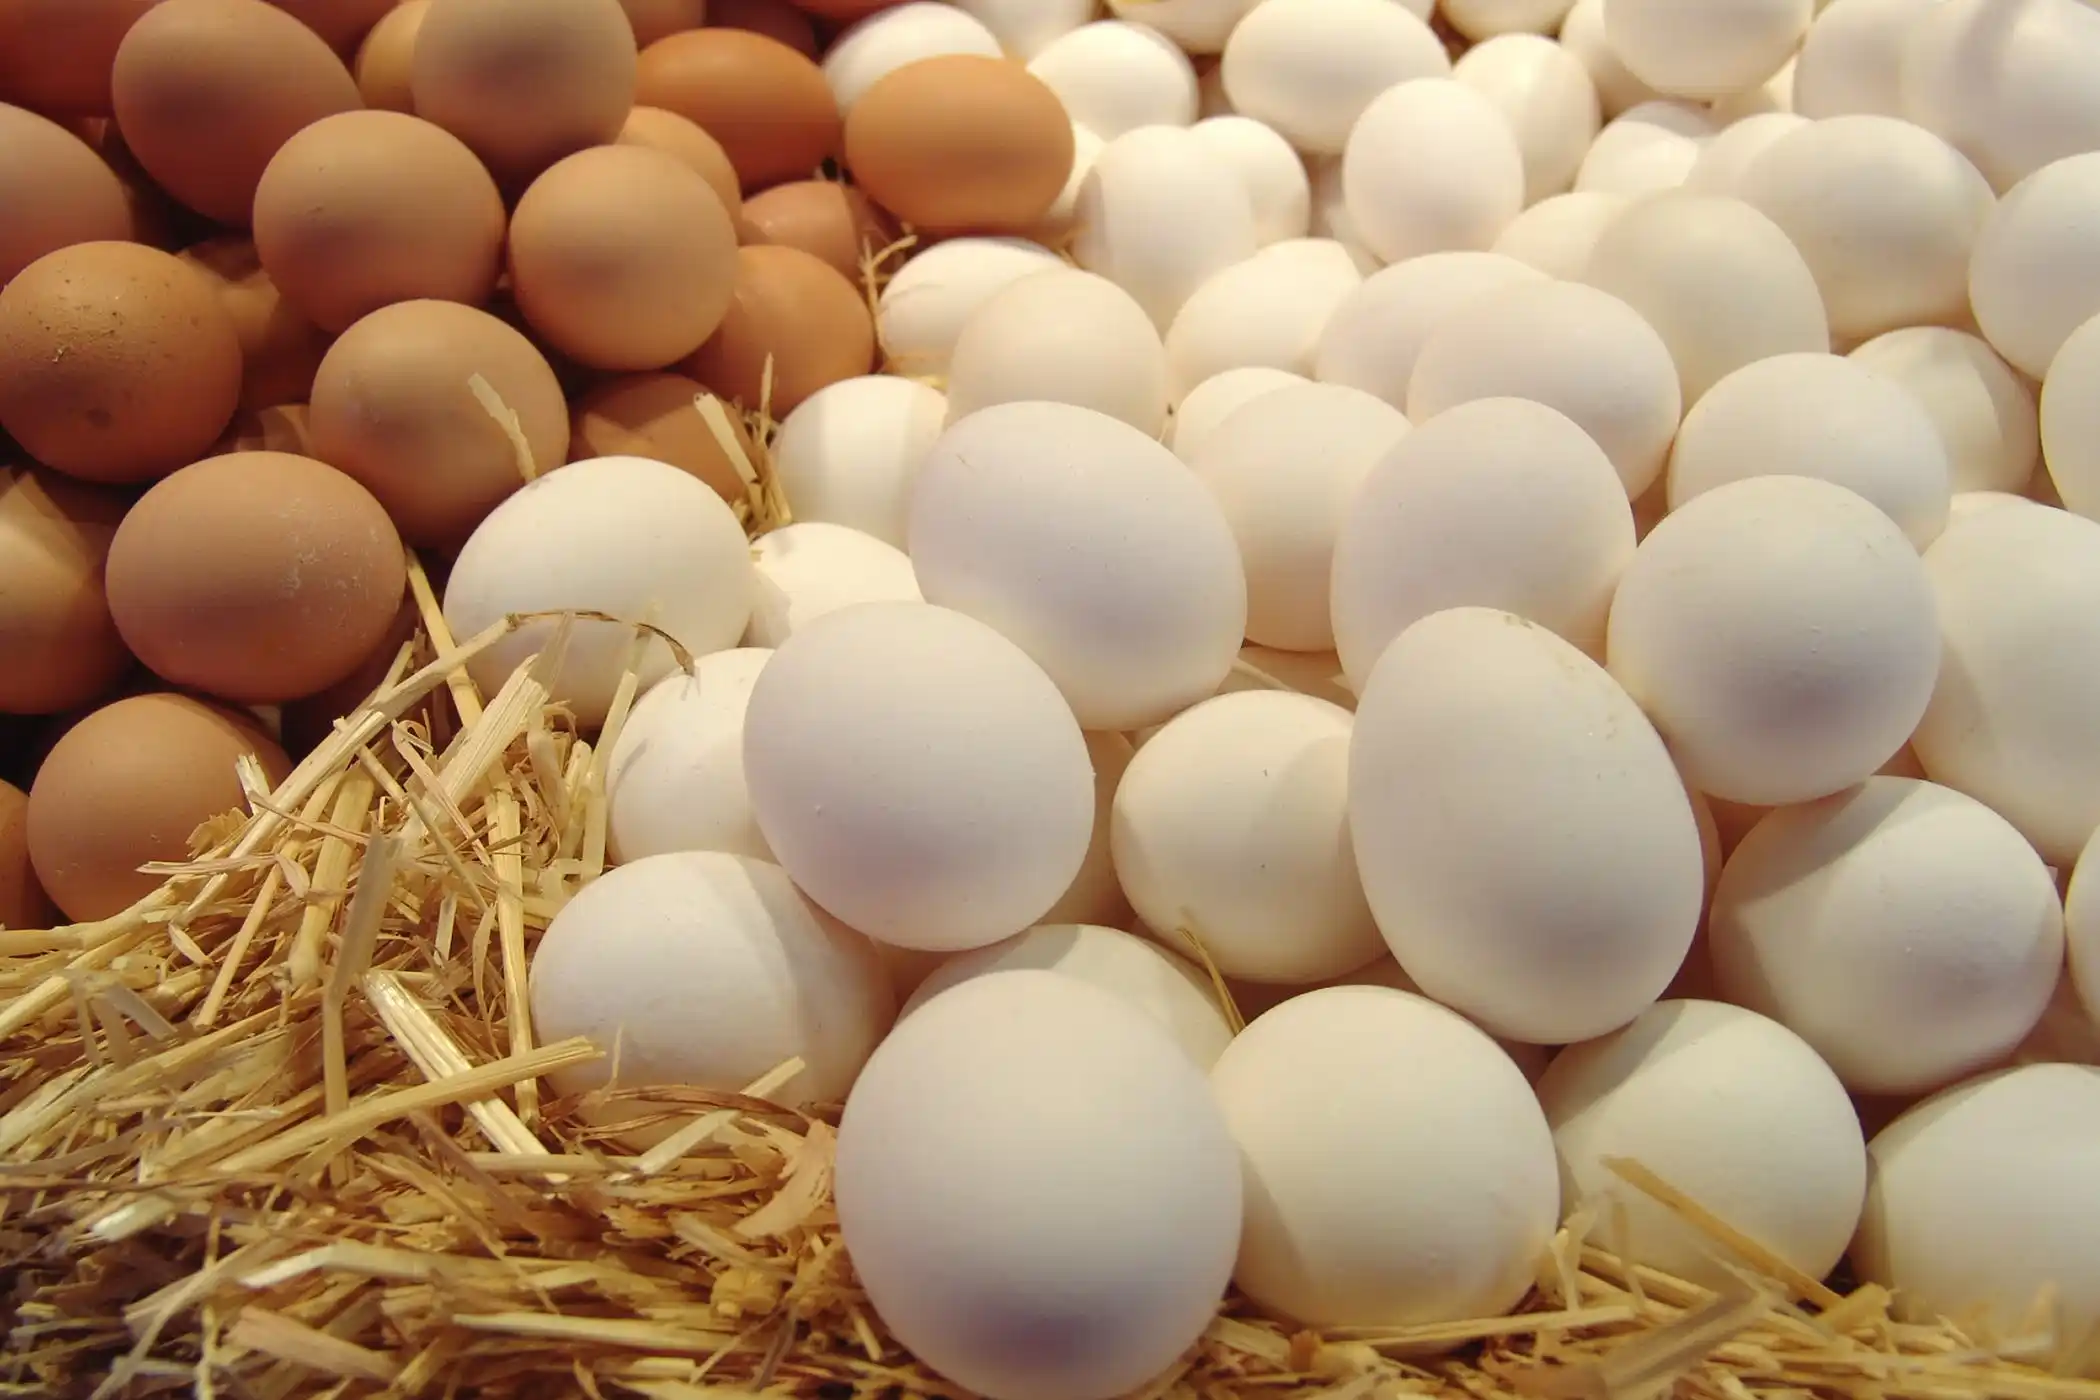  البيض في المنام - اسرار تفسير الاحلام